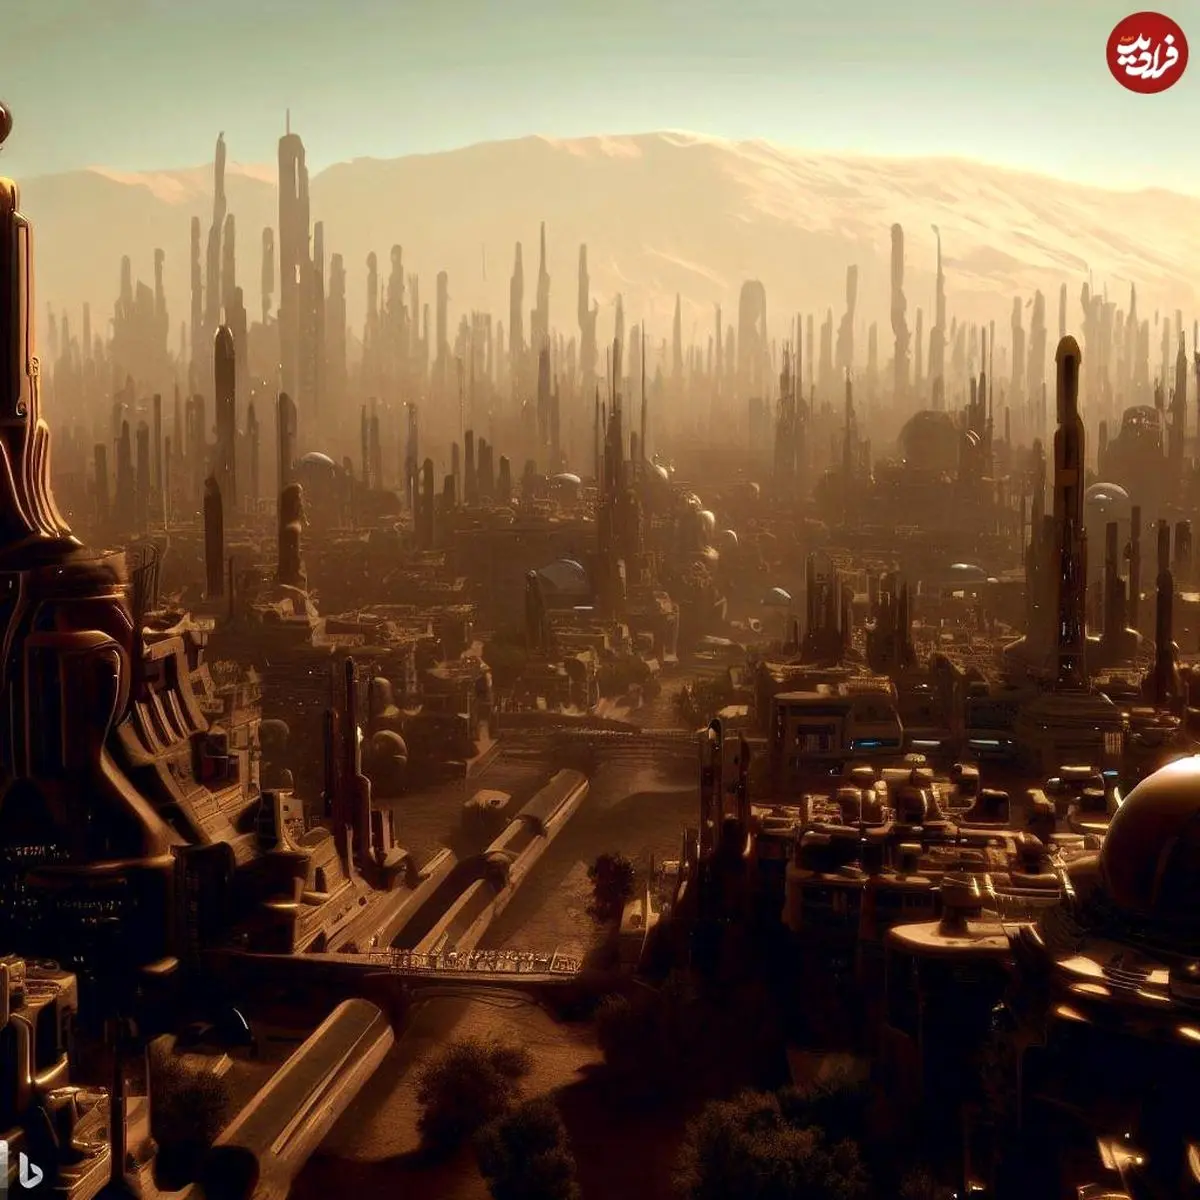 (تصاویر) وضعیت شهر تهران در سال 3023 میلادی از نظر هوش مصنوعی
